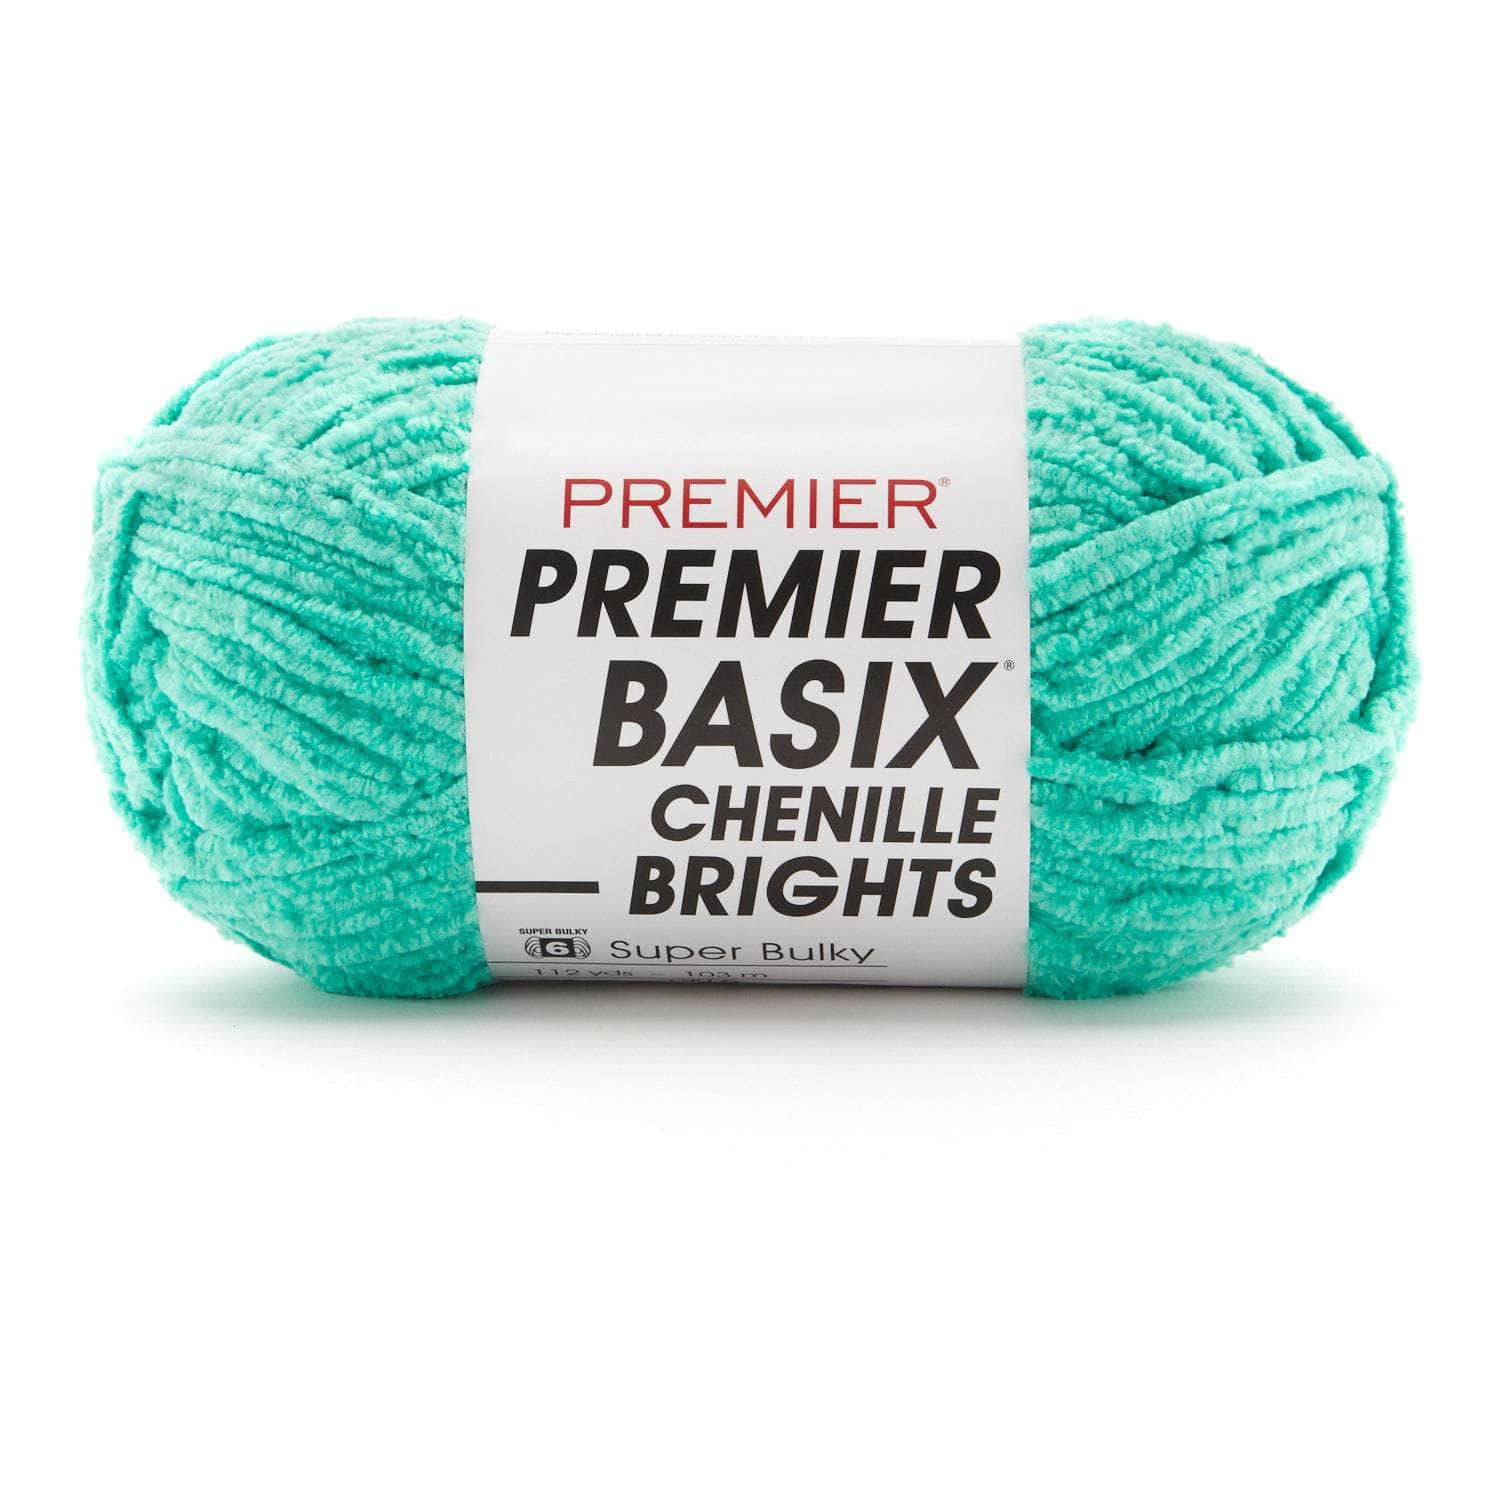 Premier Basix Chenille Brights Yarn - CRAFT2U